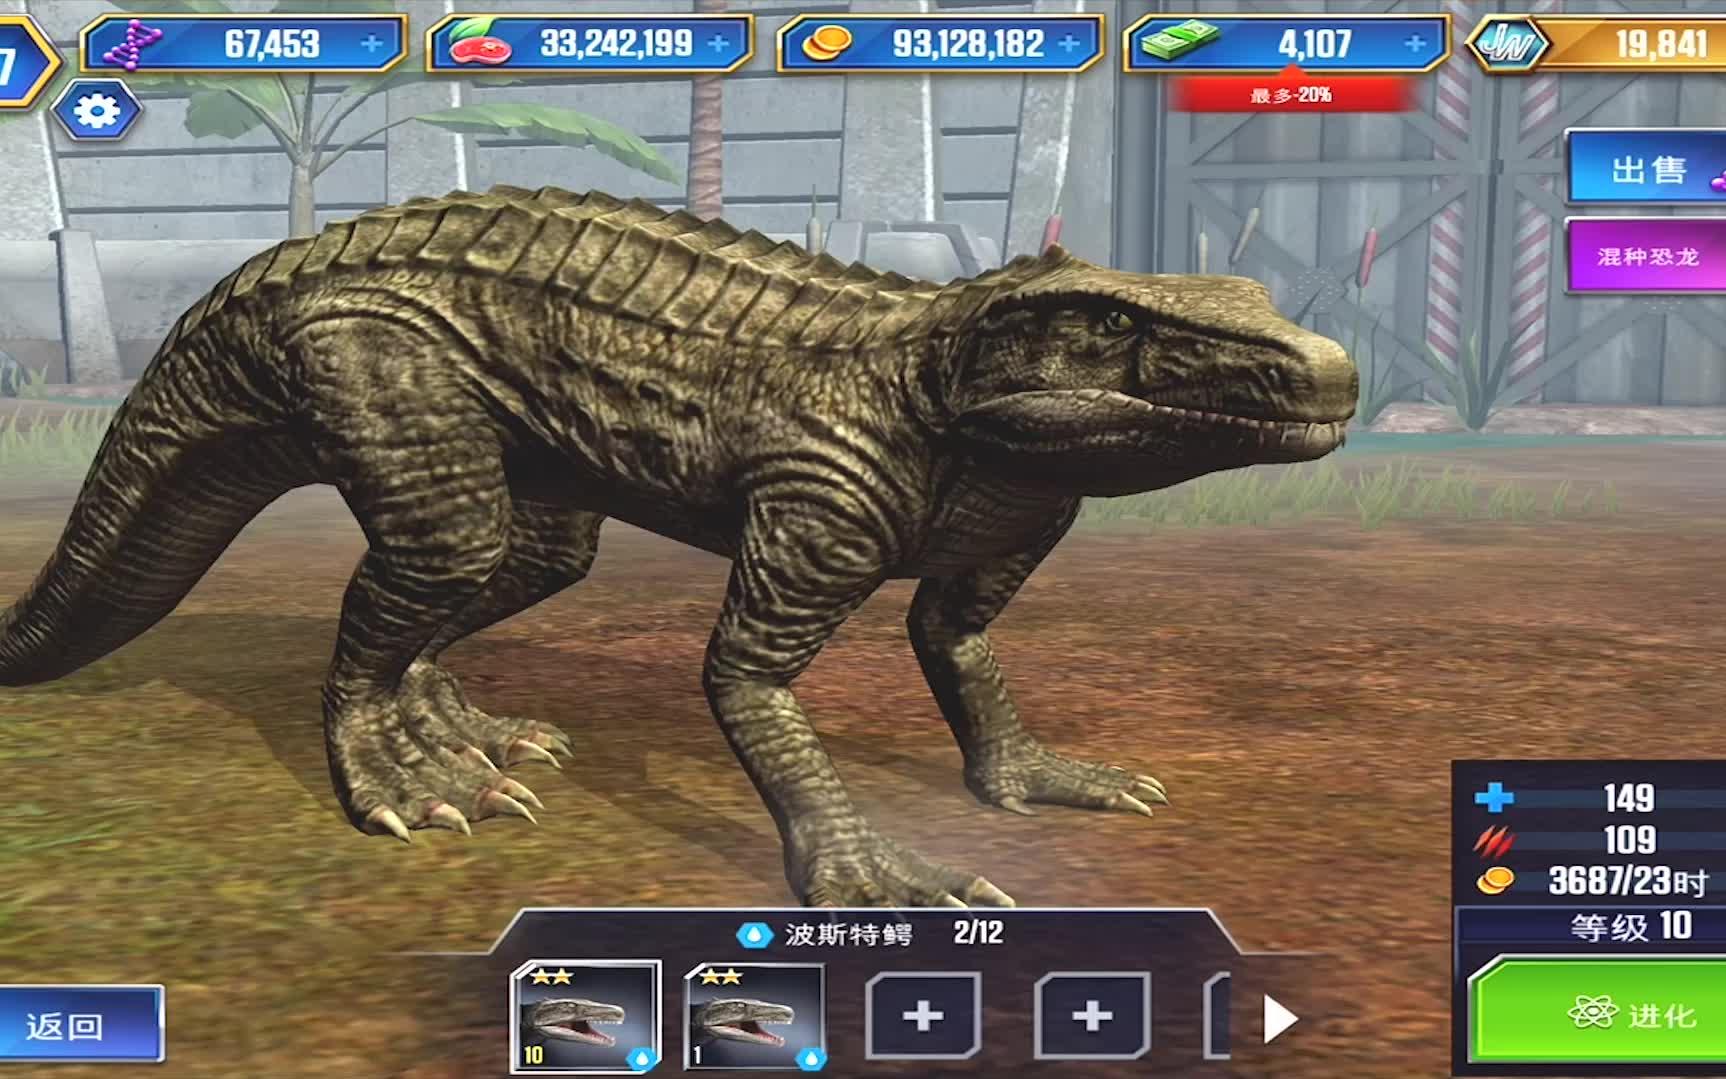 【班克】侏罗纪世界游戏 副解龙vs迅猛龙vs地蜥鳄,恐龙公园